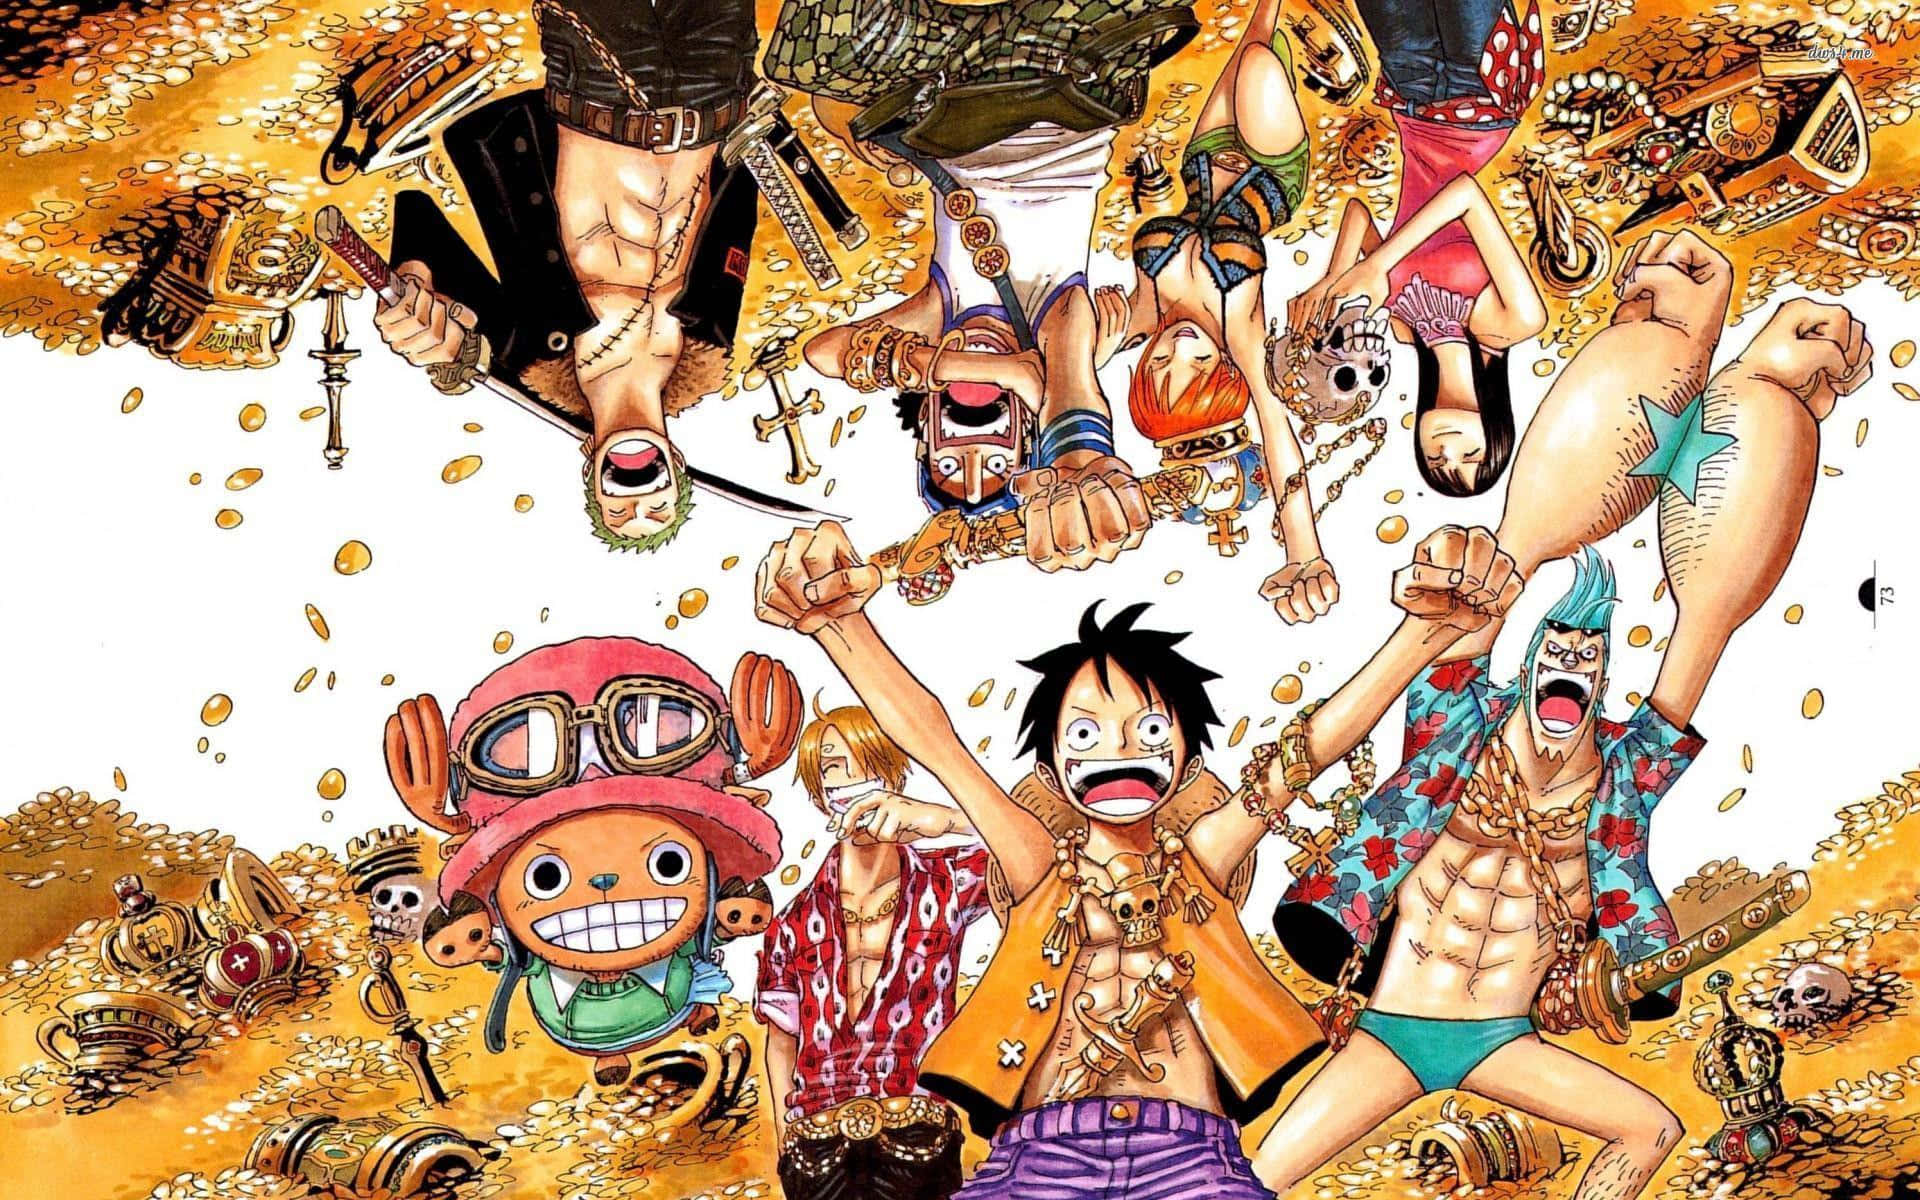 Aproveitandoum Lindo Dia Na Grand Line Com Alguns Dos Personagens Principais Do Anime One Piece. Papel de Parede